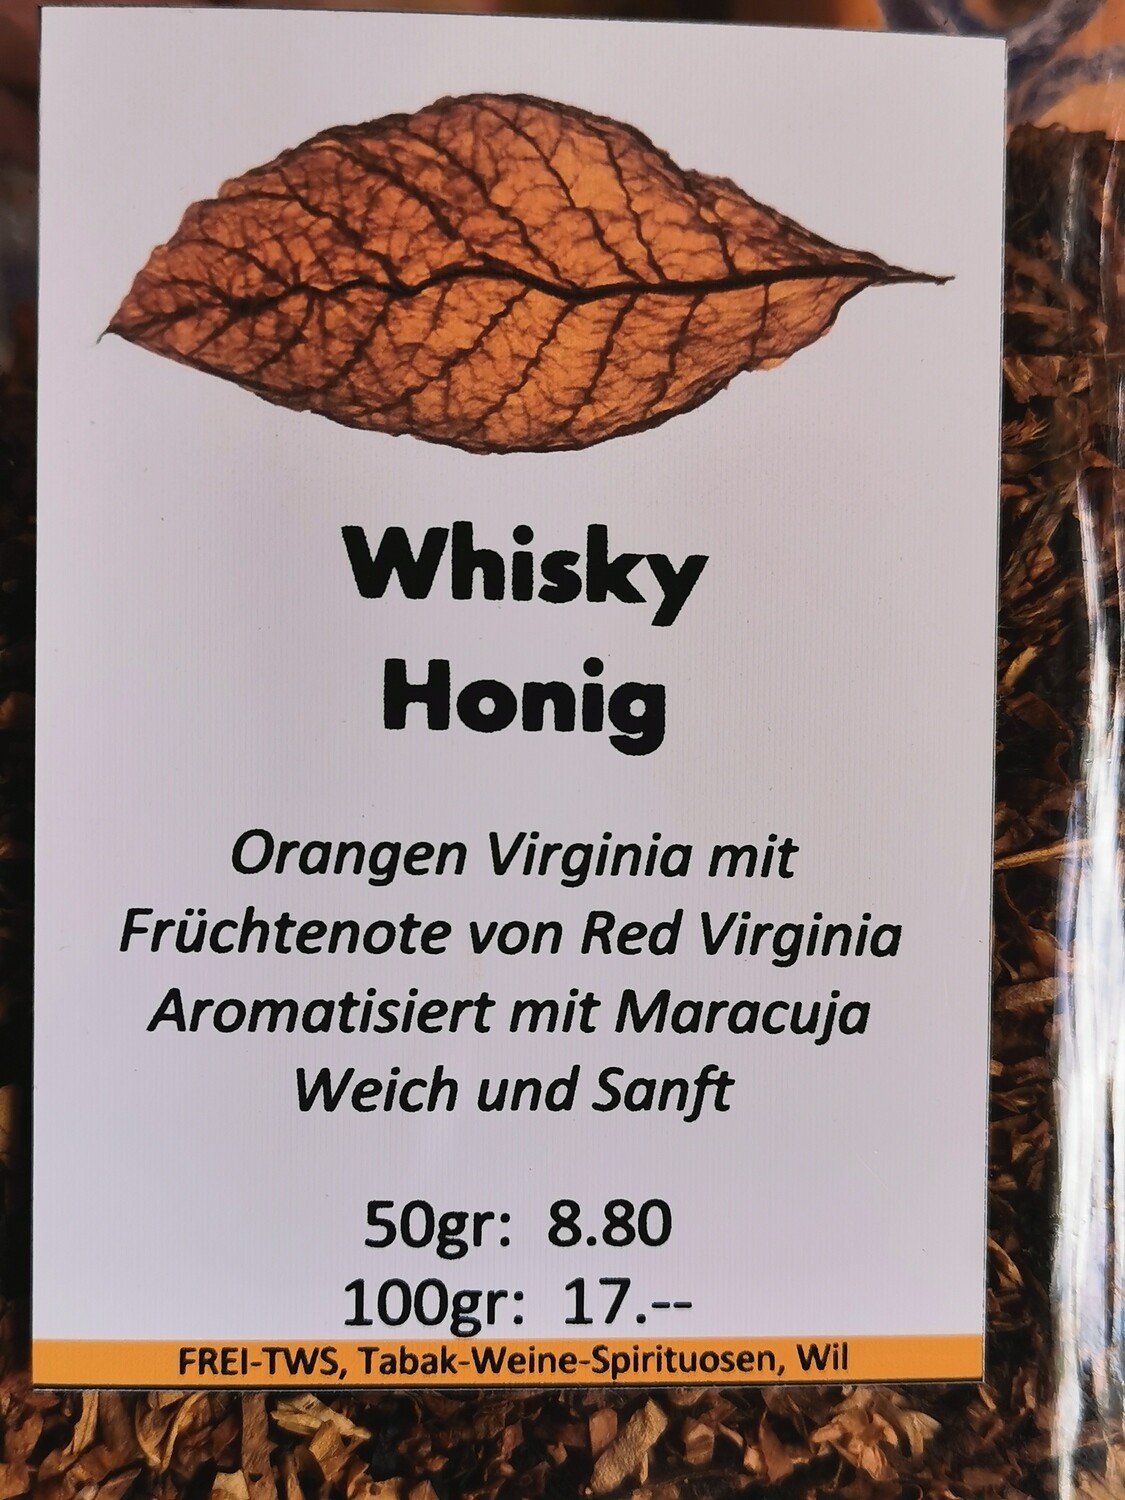 Pfeifentabak Whisky/Honig 100gr